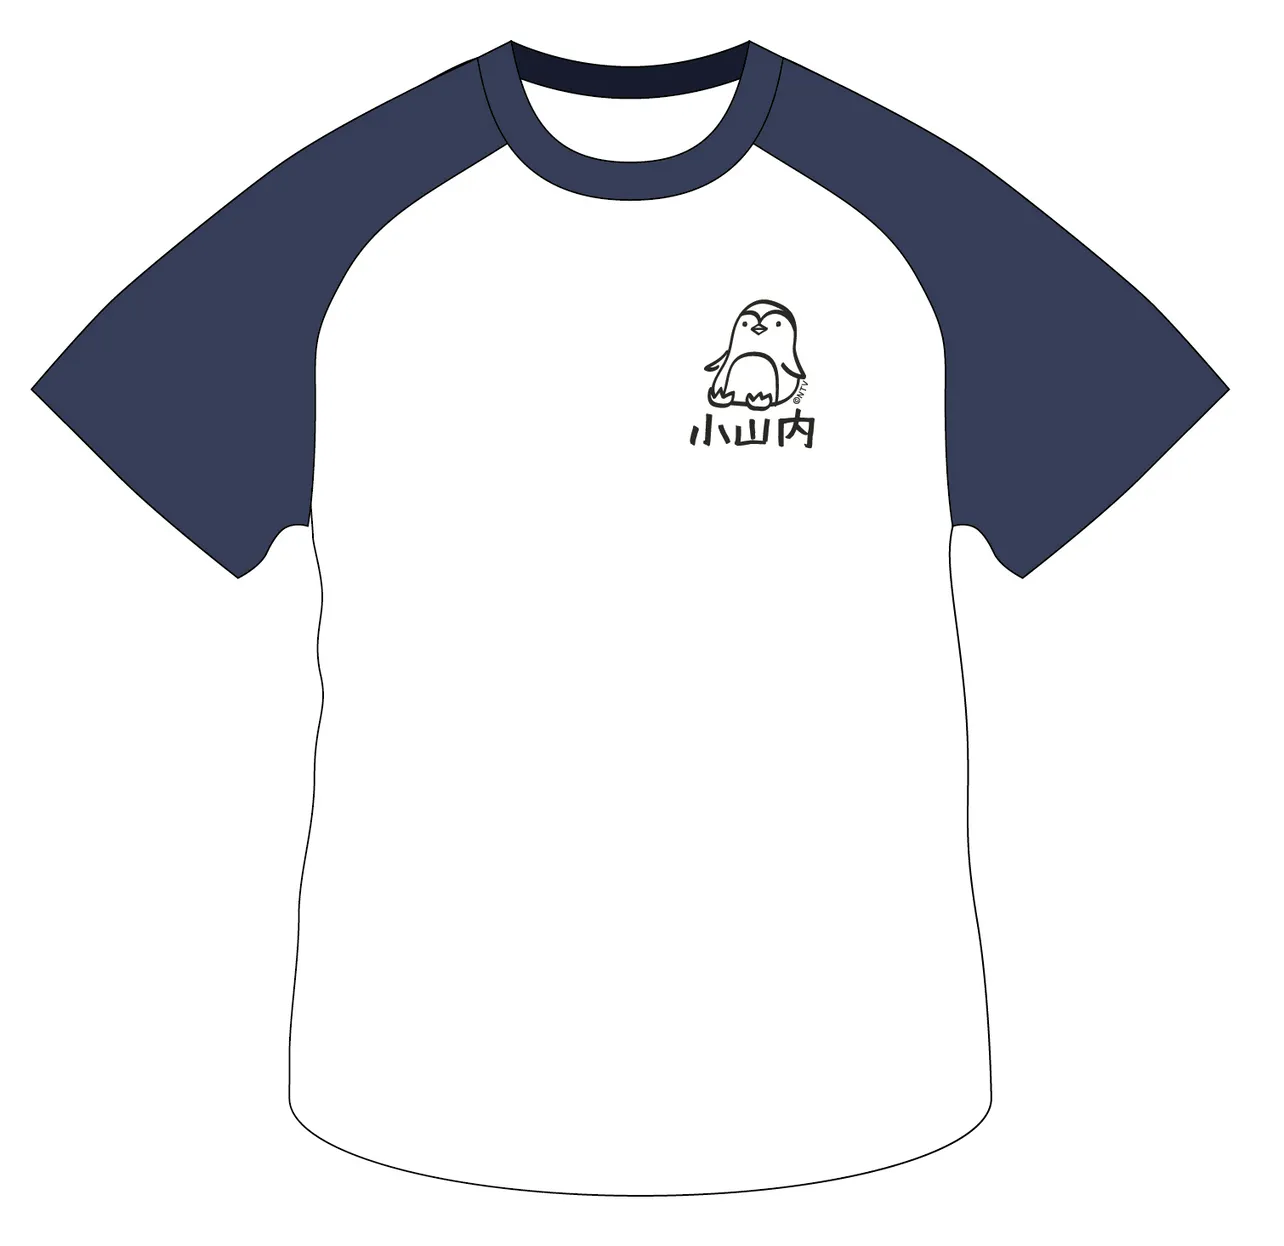 ファンミーティング特製の「小山内三兄弟Tシャツ」